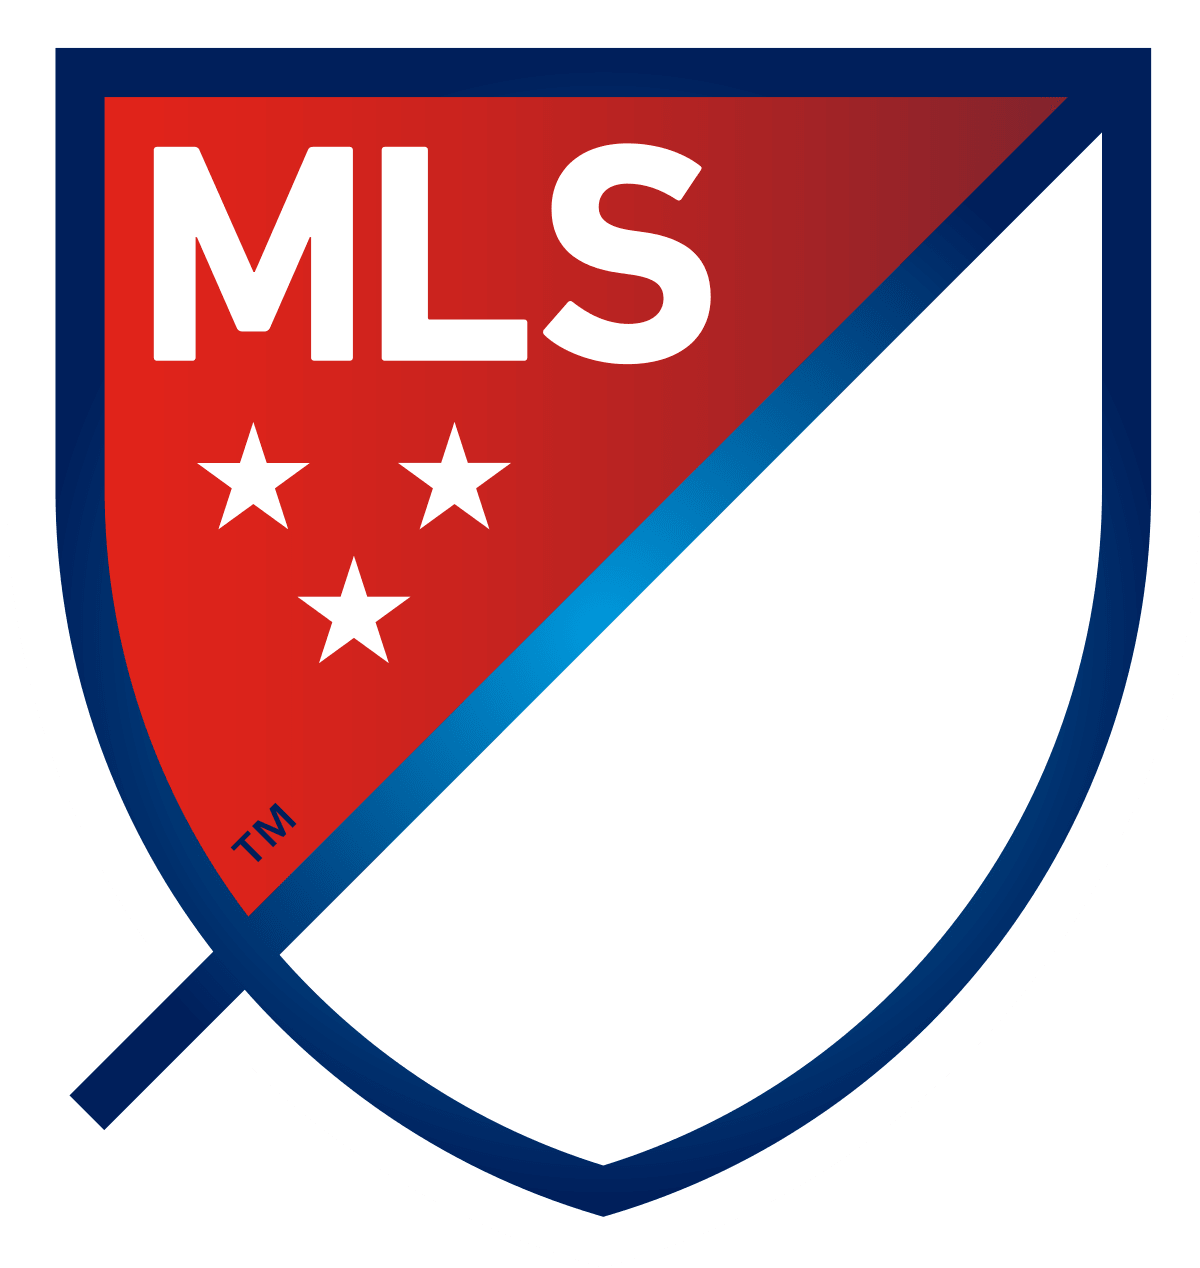 Soccer - 2022 - MLS (Major League Soccer) - Topps - Hobby Pack (8 Cards) - Hobby Champion Inc